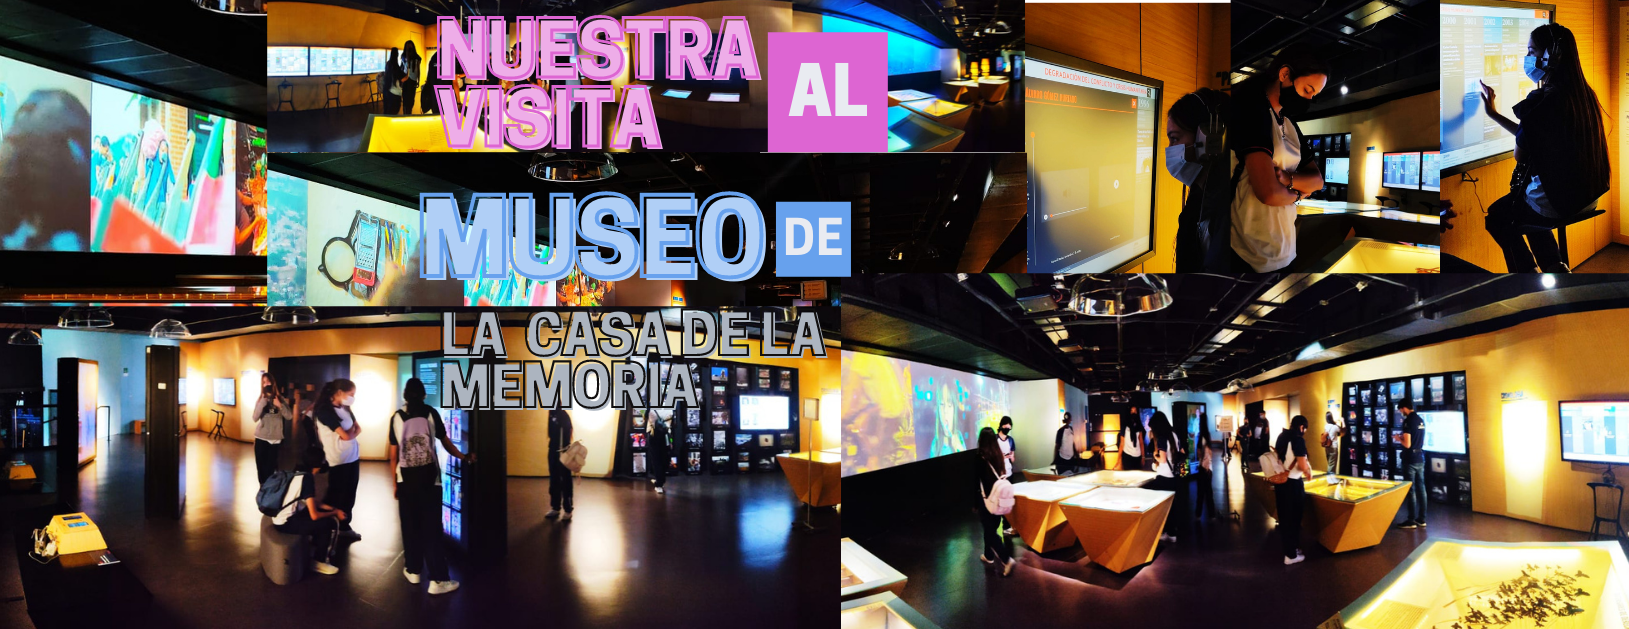 Museo Casa de la memoria